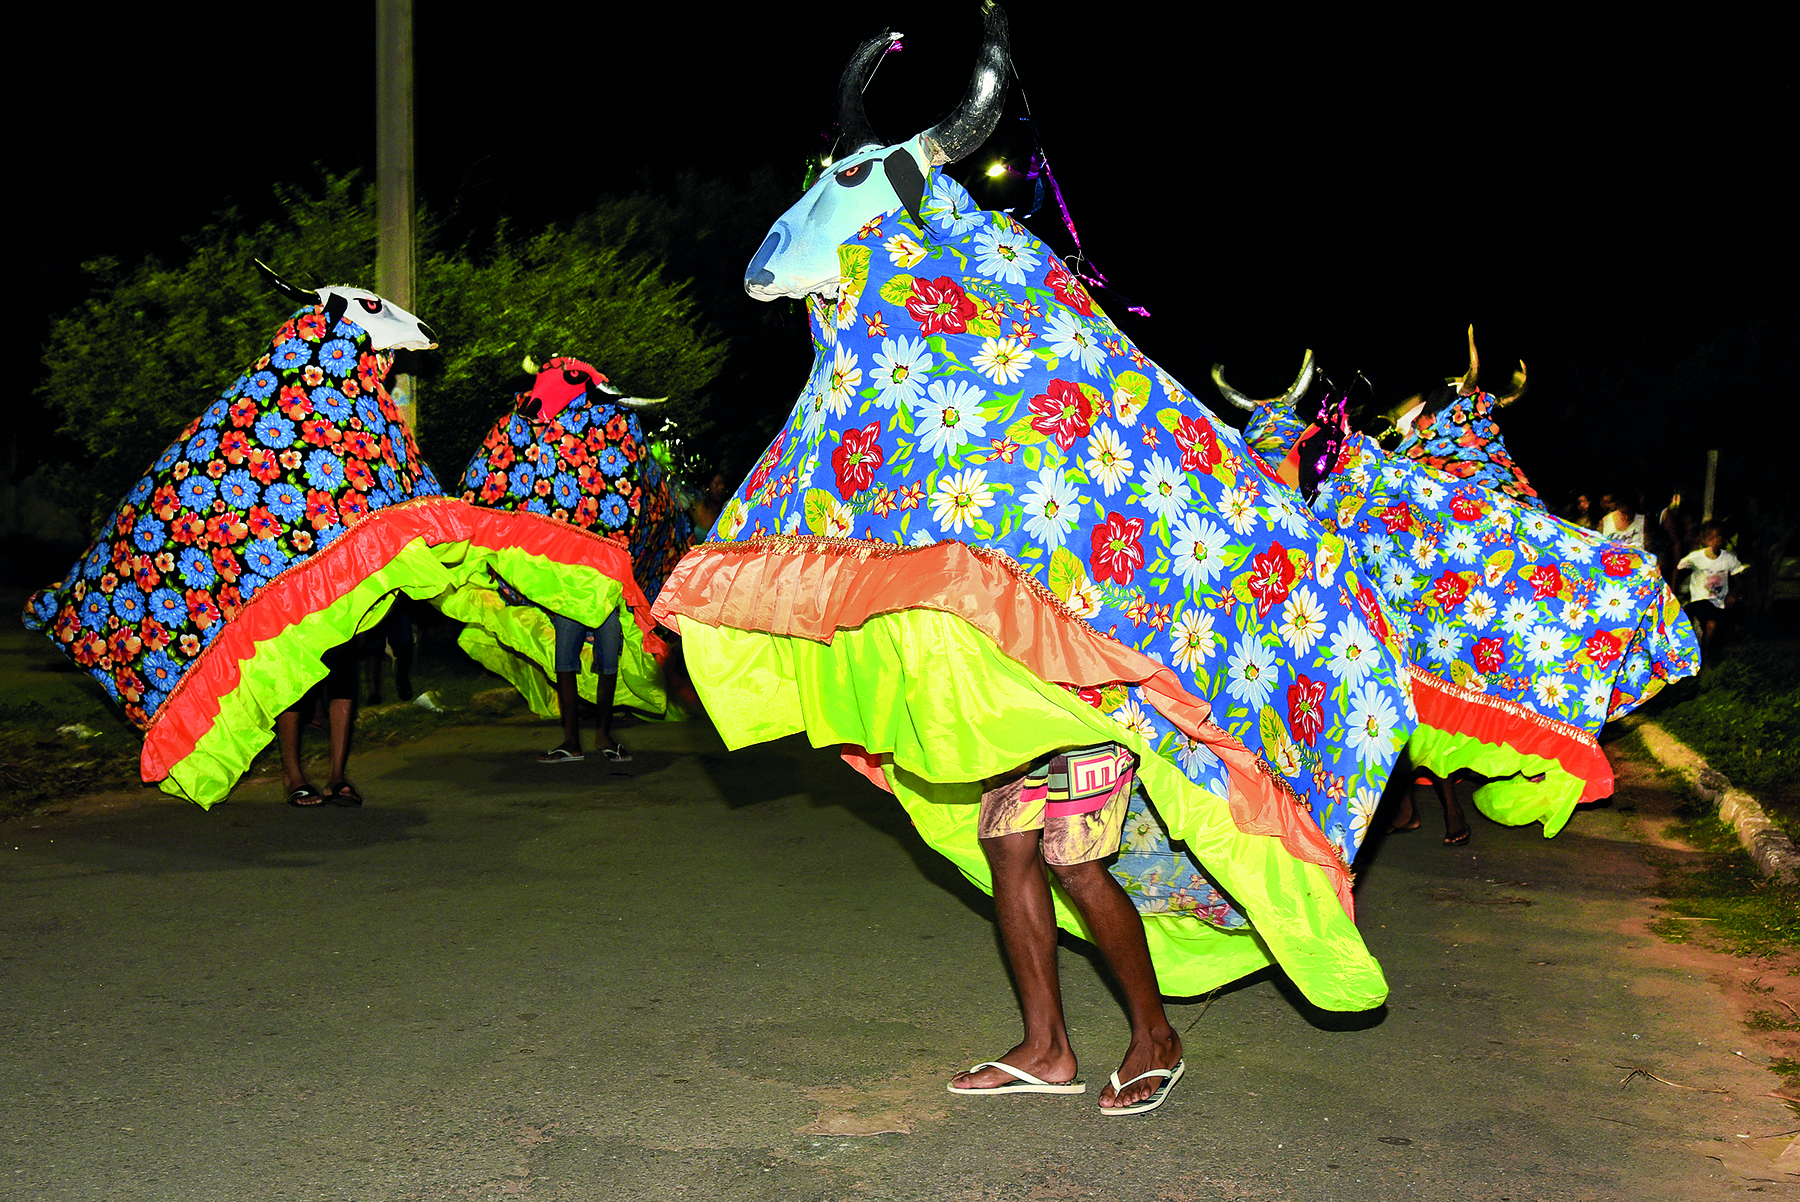 Fotografia. Um grupo de pessoas desfila na rua usando alegorias de boi feitas com tecidos coloridos e floridos e uma máscara de boi.